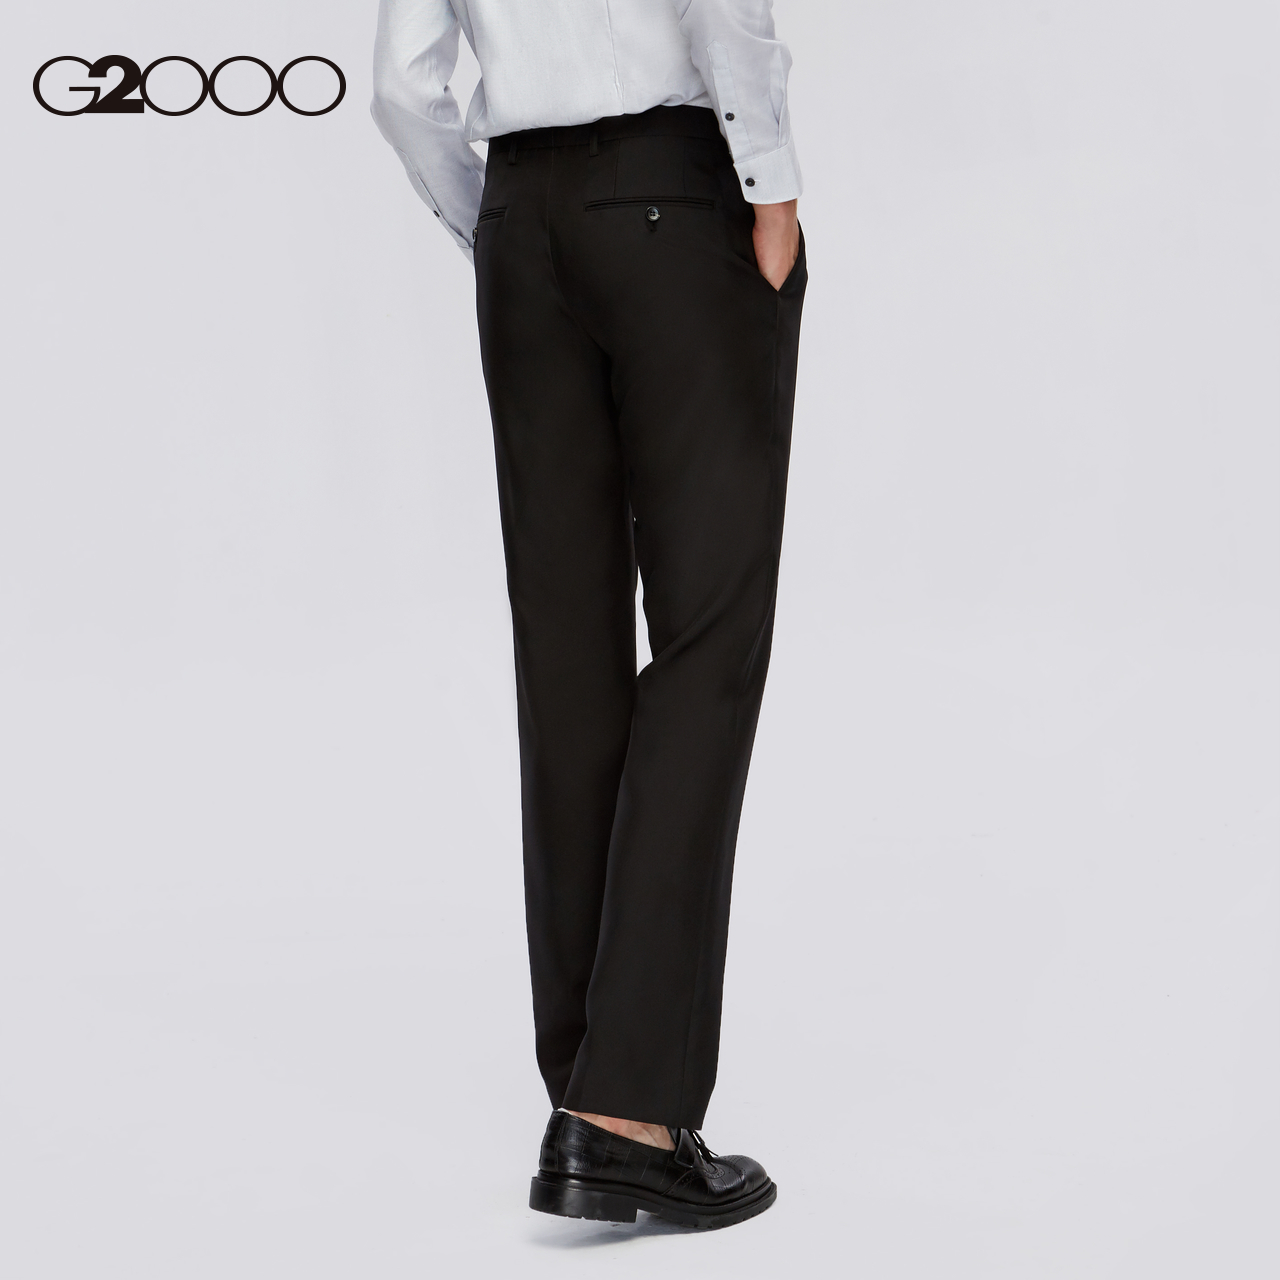 G2000 trung tâm mua sắm của nam giới với cổ điển thẳng tinh khiết quần kinh doanh xu hướng màu sắc và giải trí người đàn ông 00.150.392.